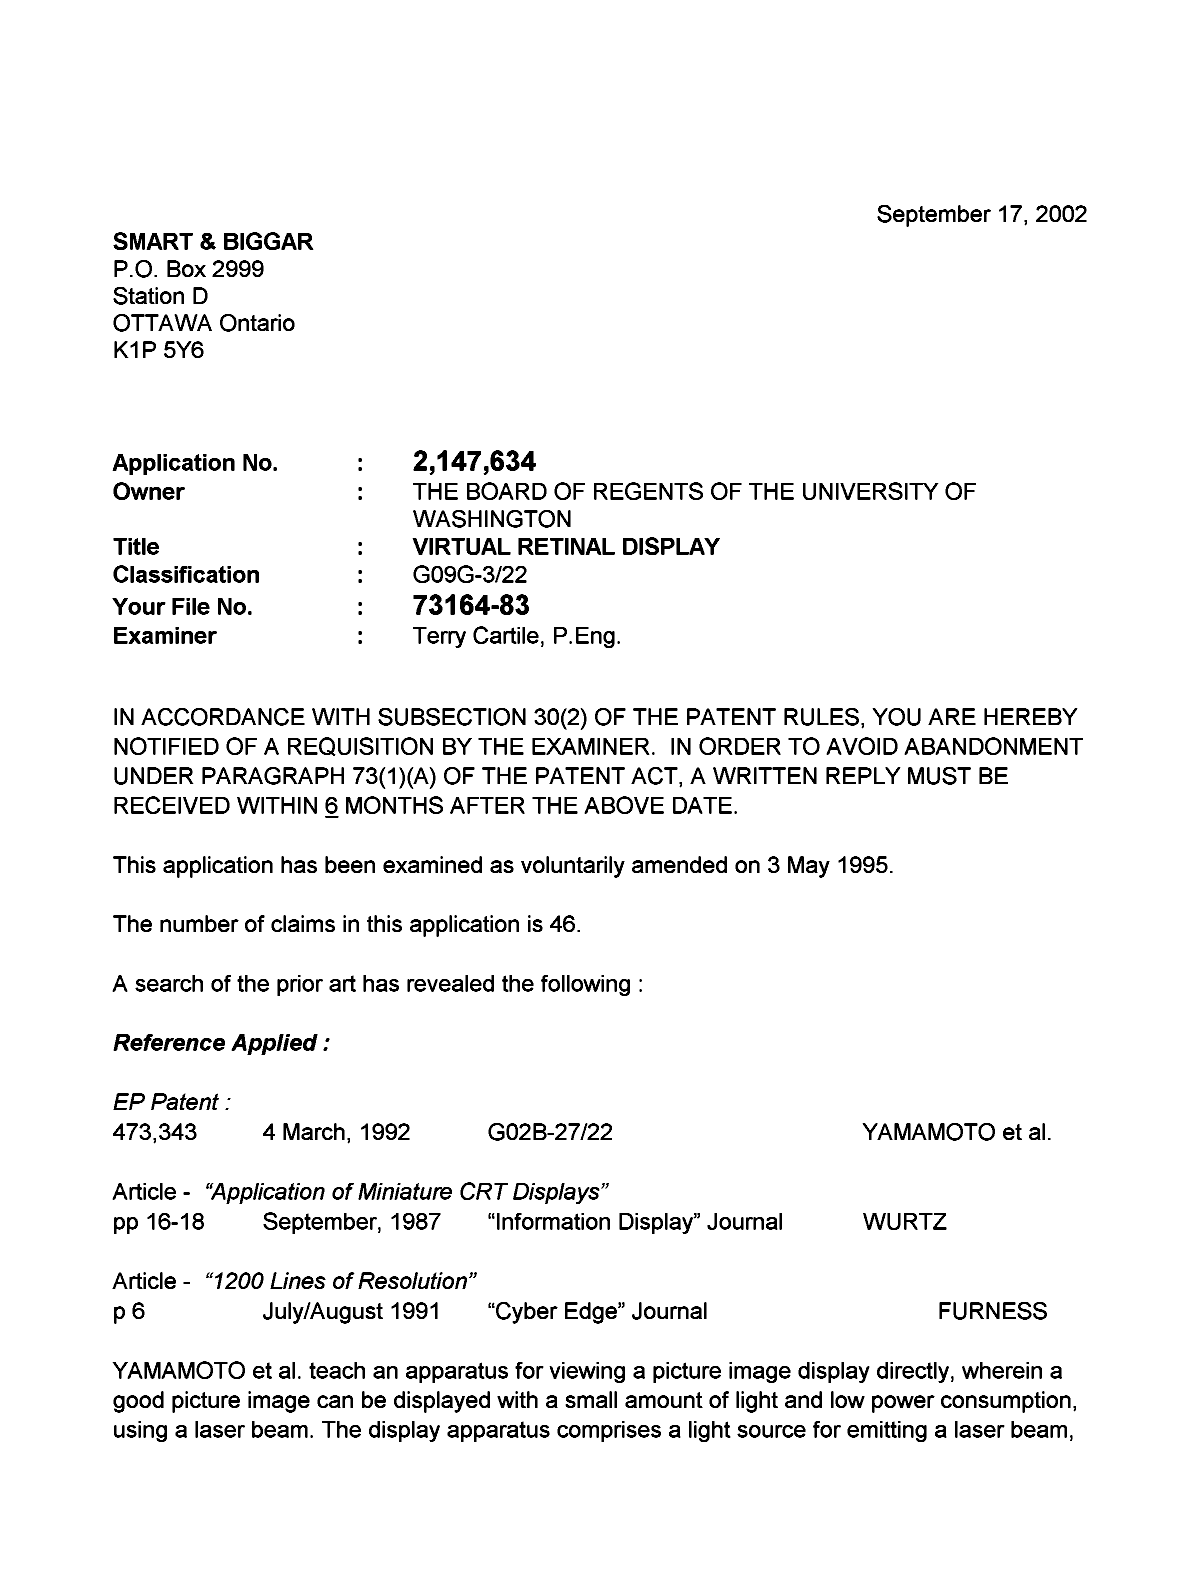 Document de brevet canadien 2147634. Poursuite-Amendment 20020917. Image 1 de 3